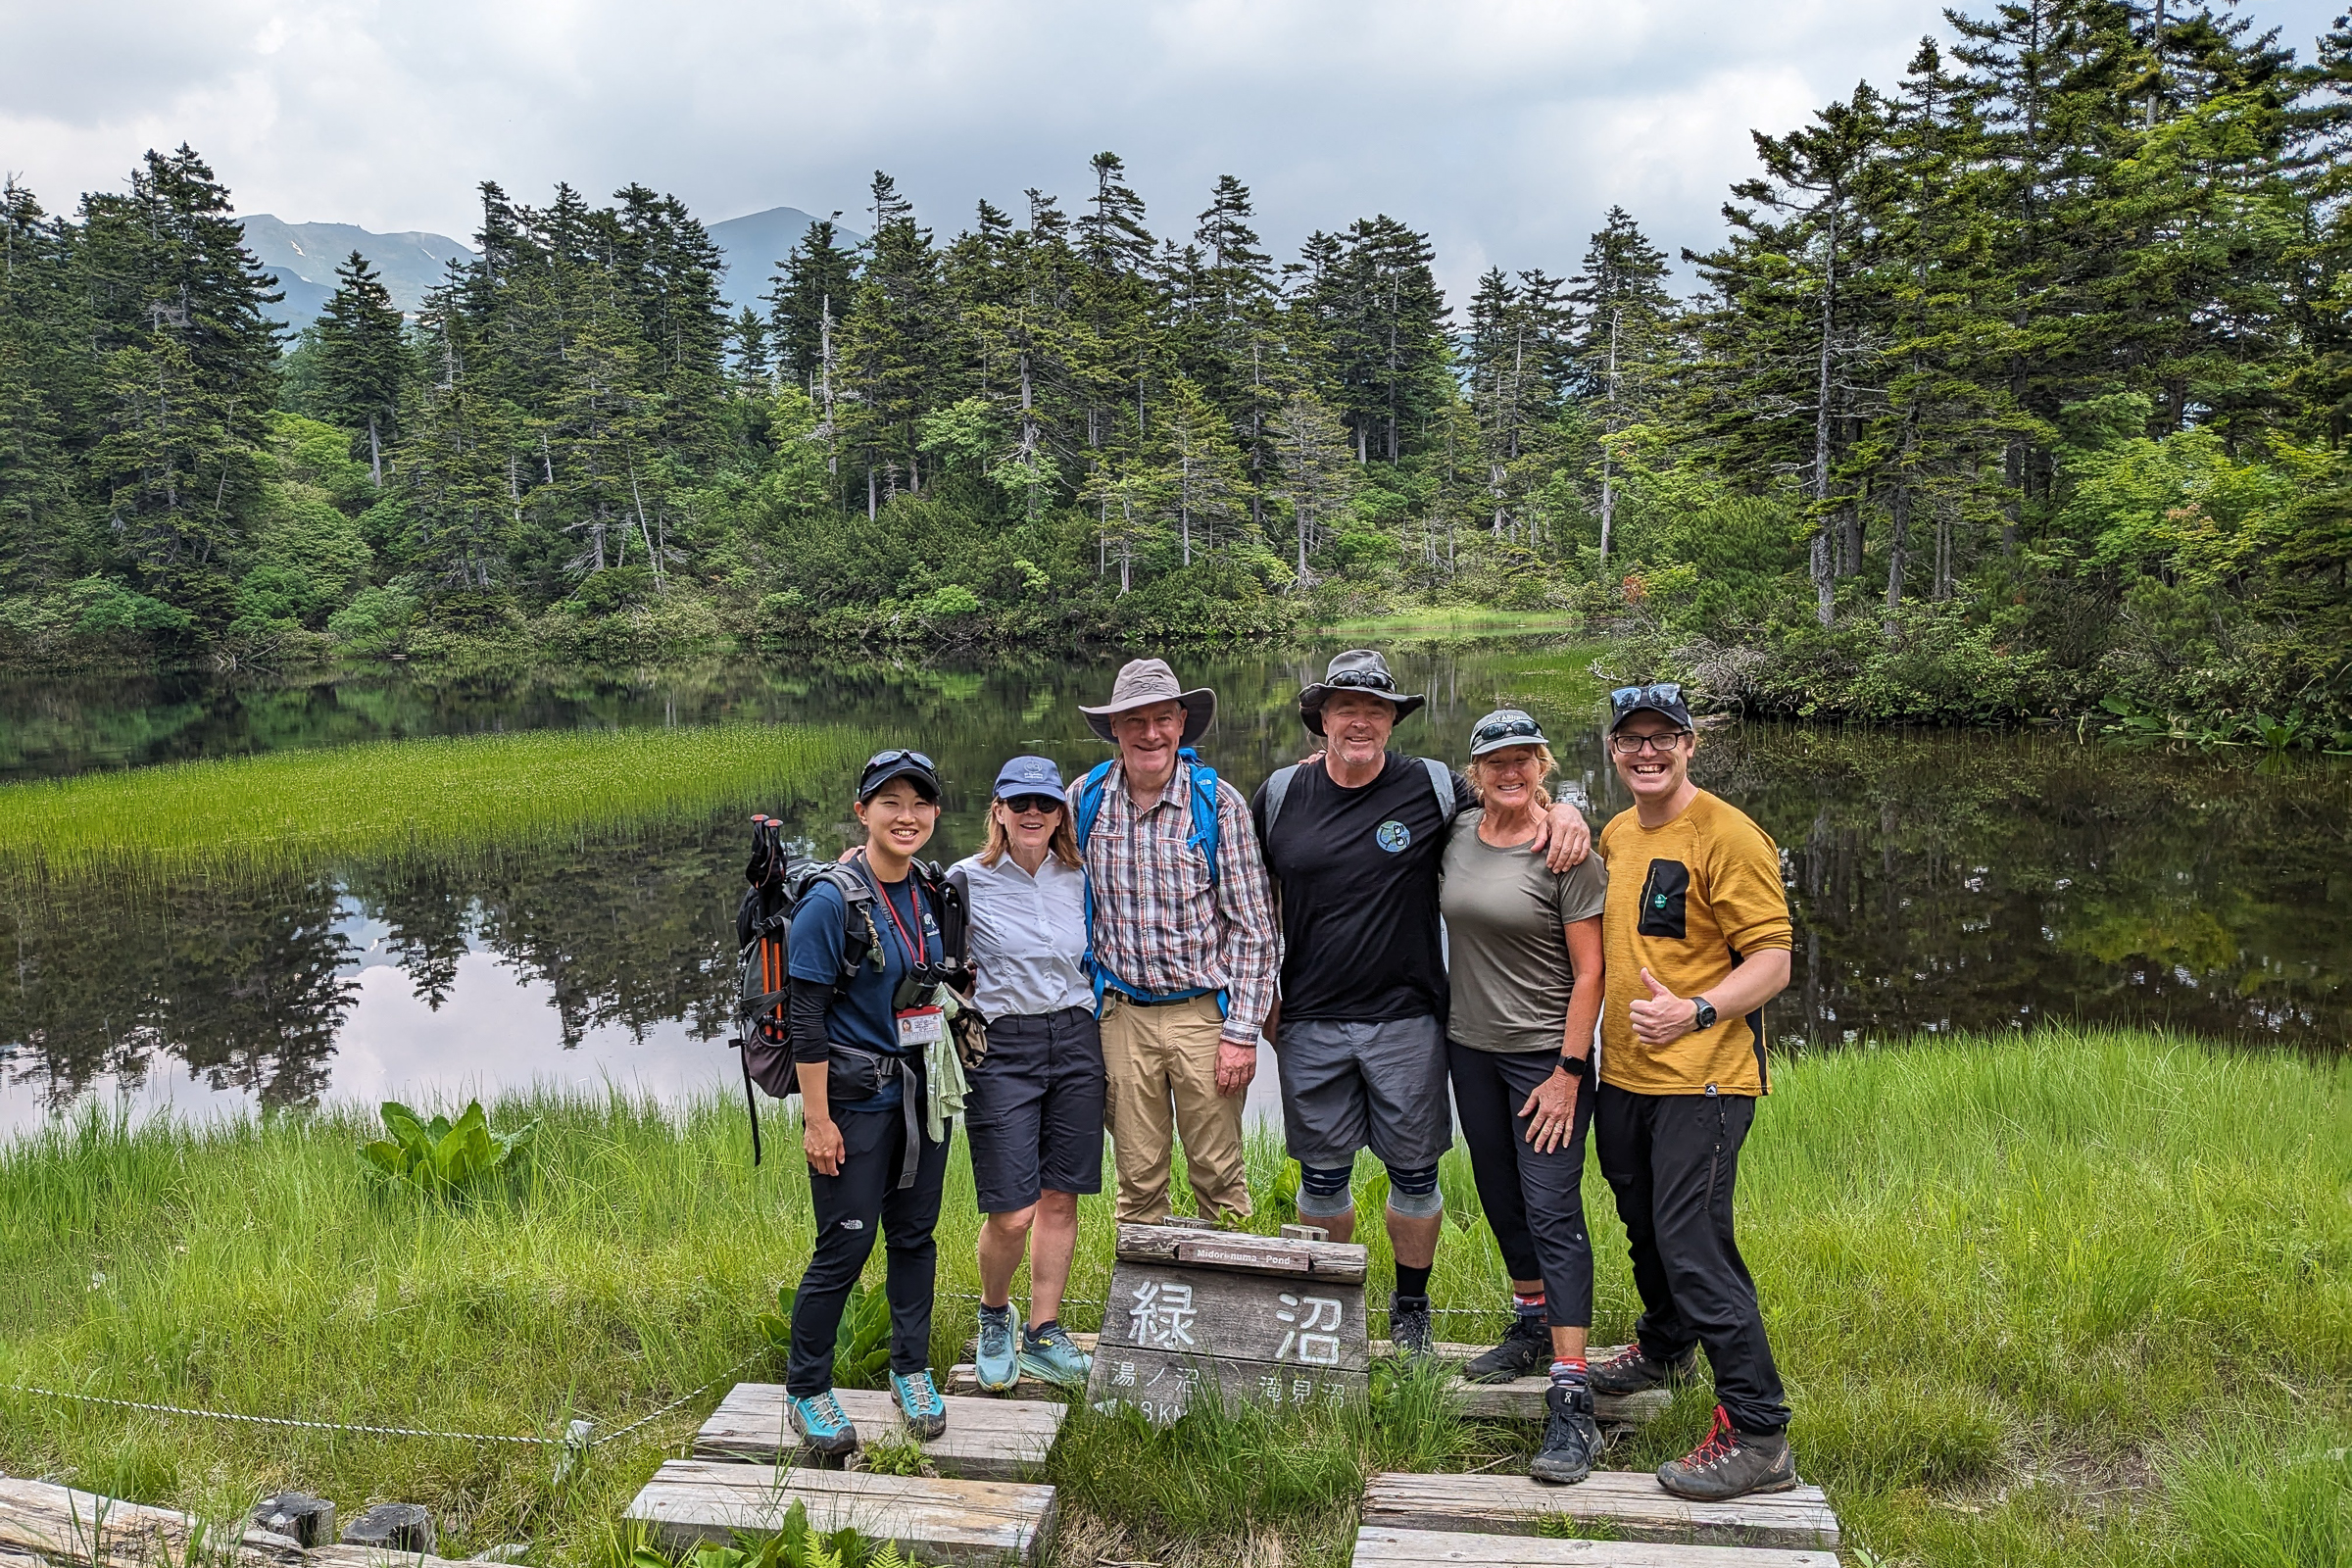 Adventure Hokkaido guests and guides Richard & Yuka at Midori Pond, Daisetsu Kogen.